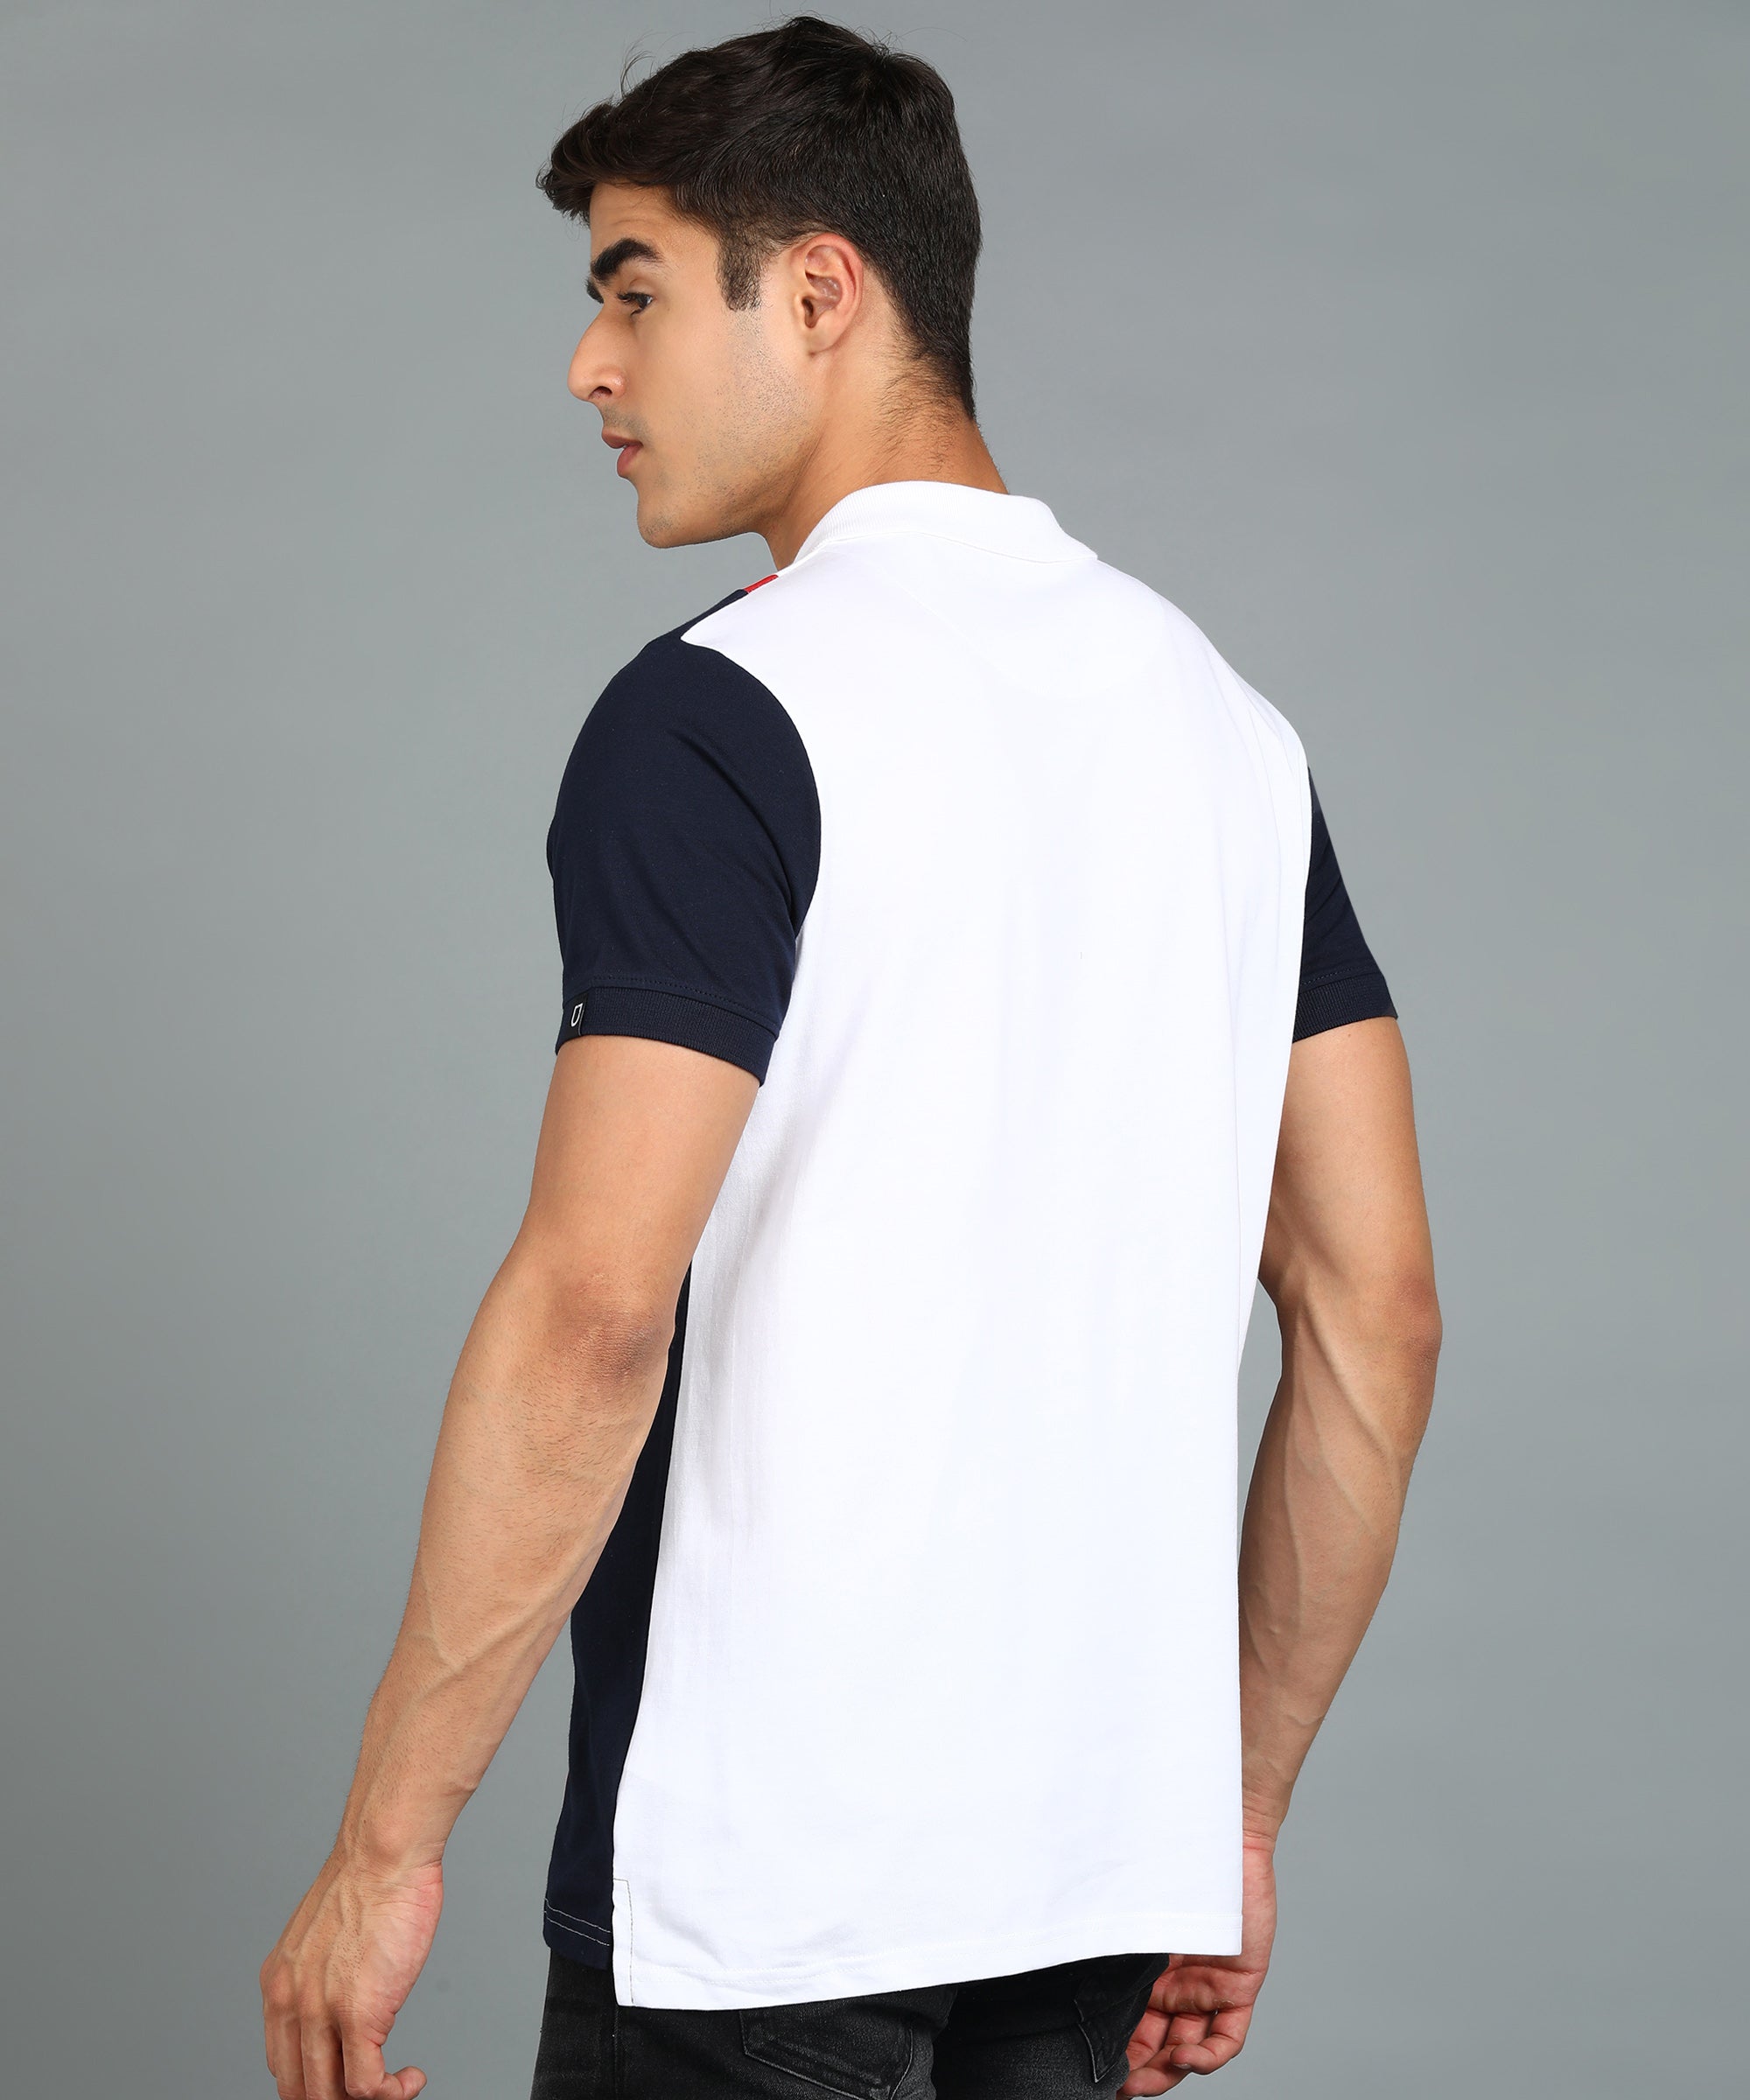 Men's White, Navy Blue Colour-Block Slim Fit Half Sleeve Cotton Polo T-Shirt